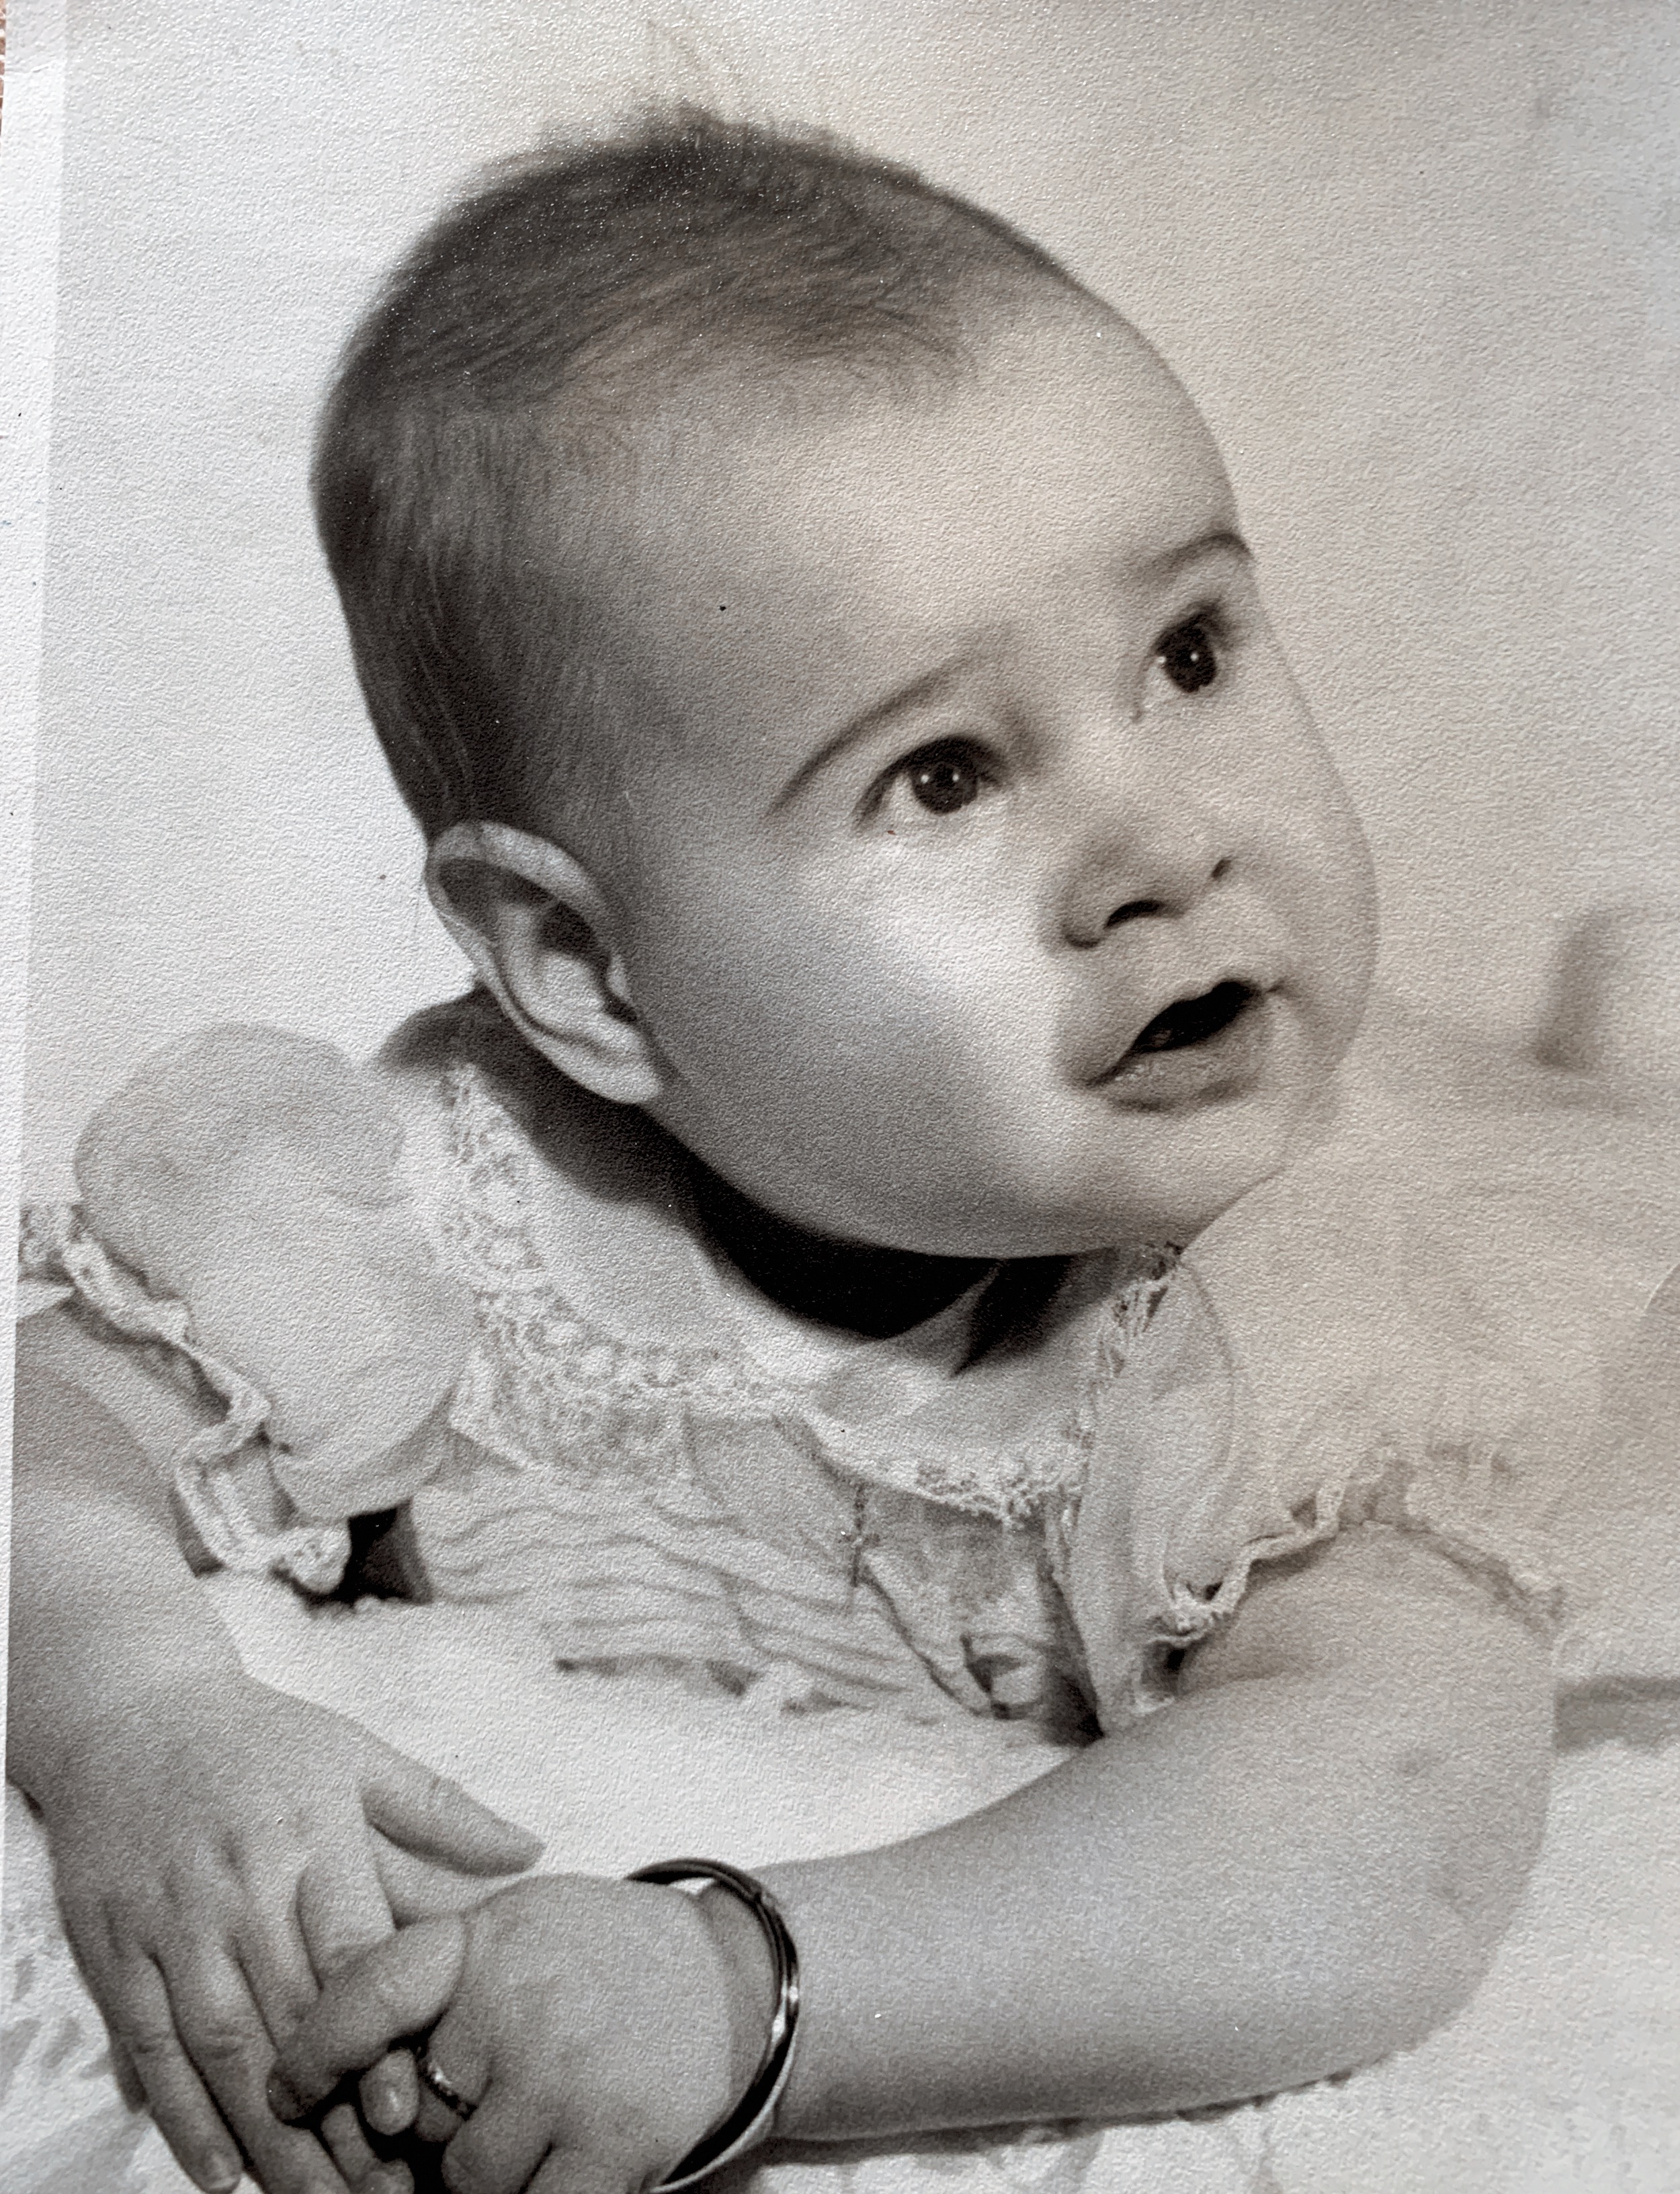 Rachel à quelques mois 1959
